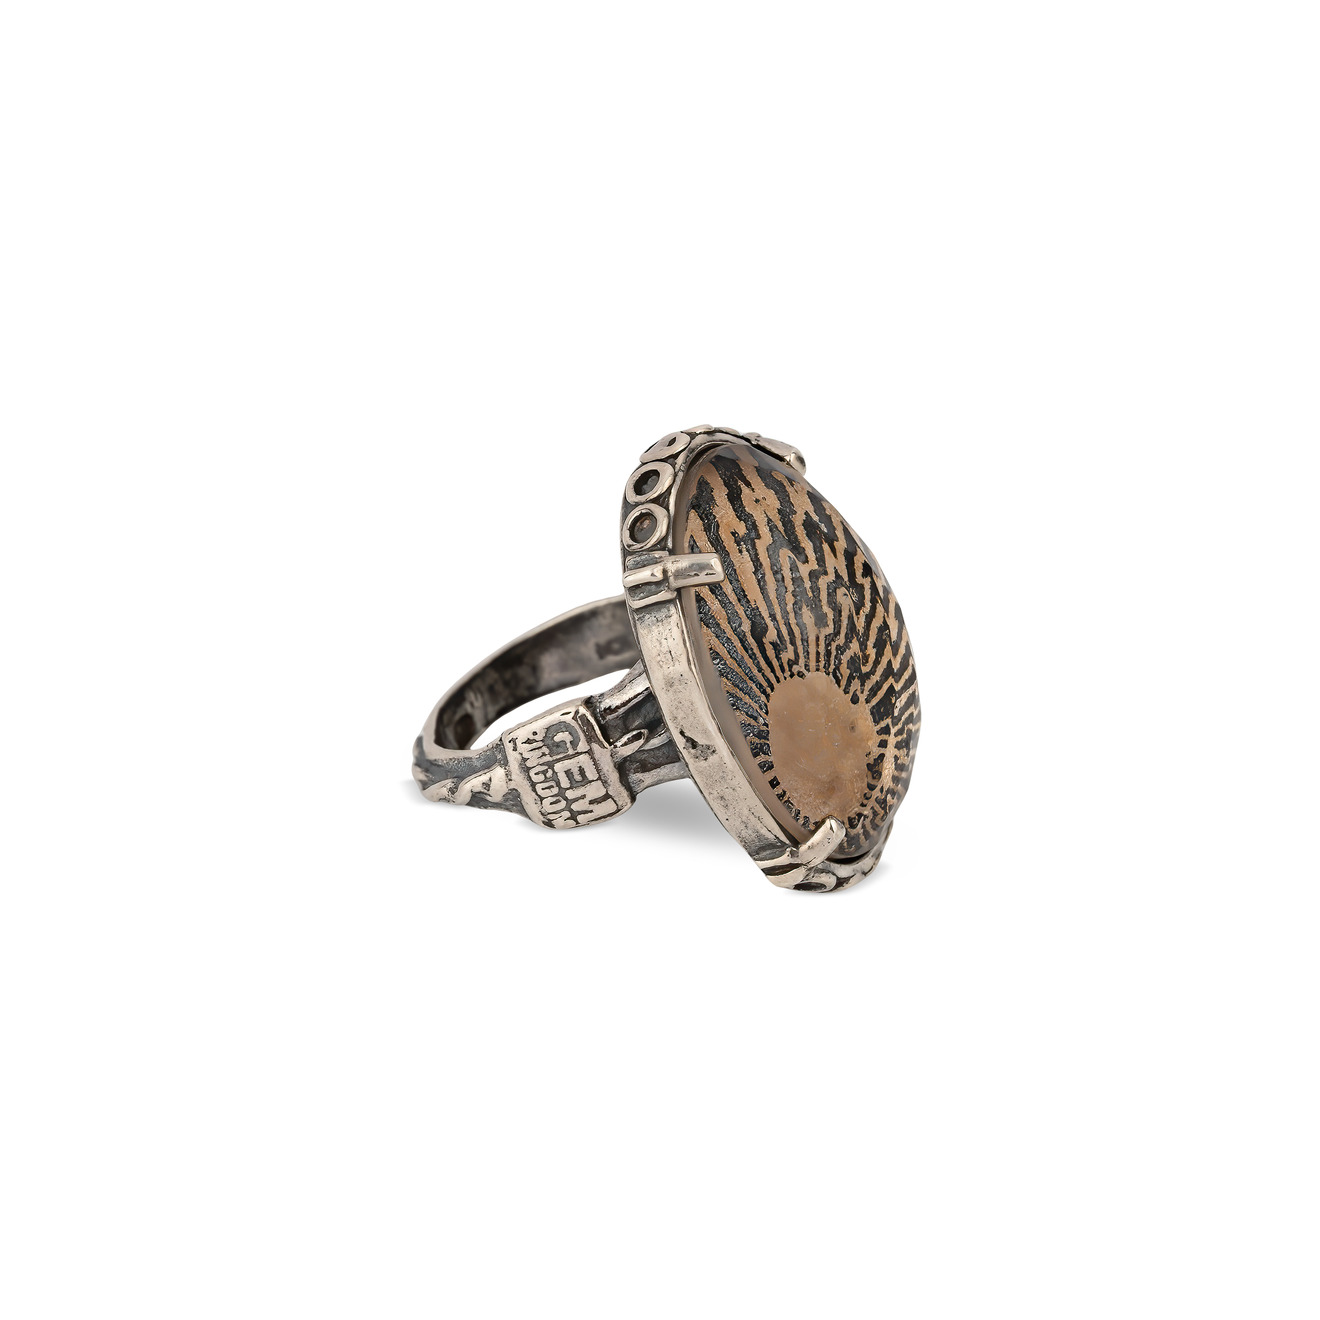 gem kingdom кольцо из серебра с богемским хрусталем и рисунком грифона Gem Kingdom Бежево-черное кольцо из серебра с ручной росписью